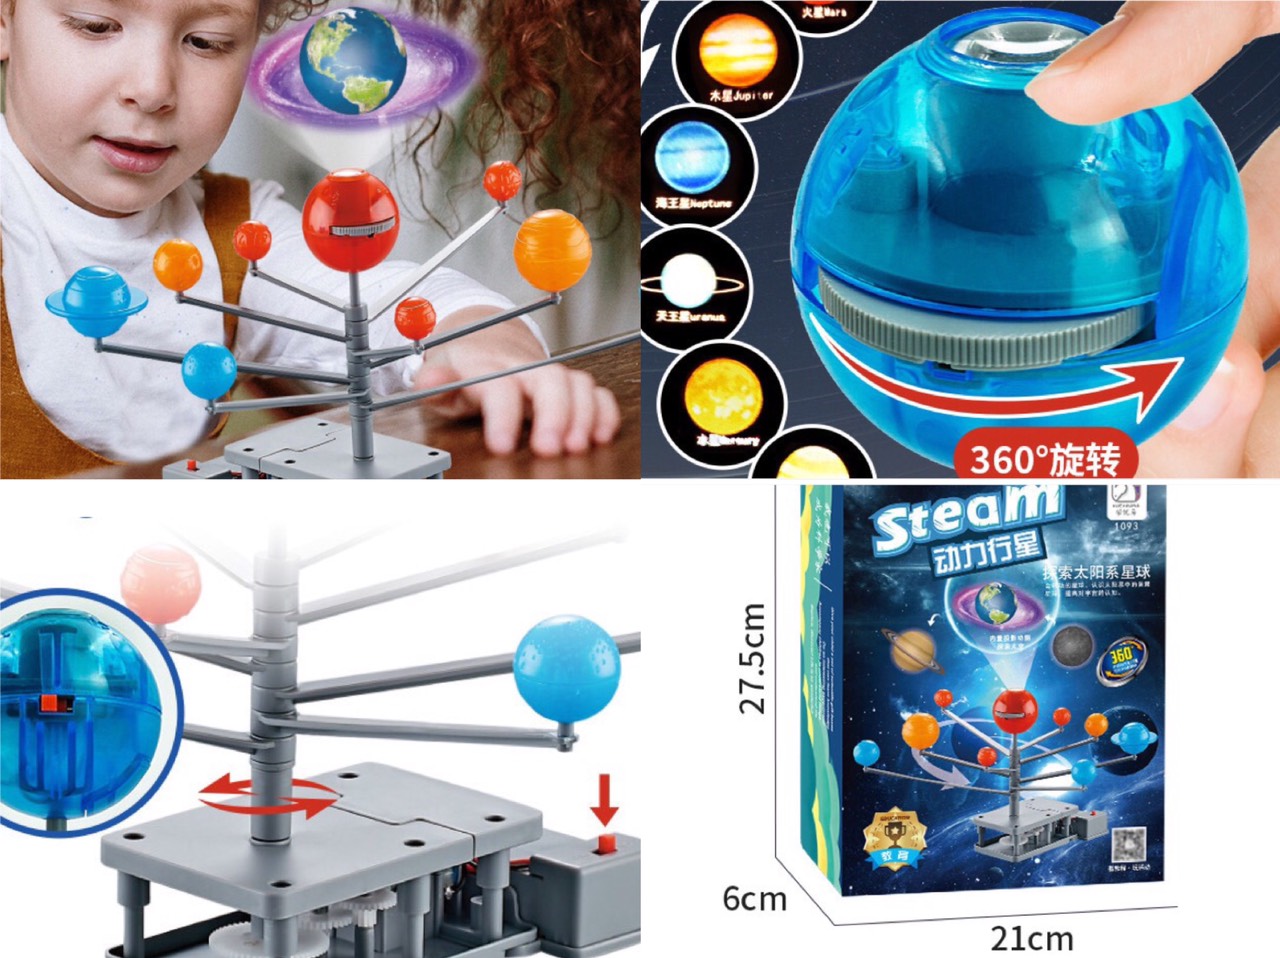 Đồ chơi khoa học Stem an toàn cho trẻ,Bộ đồ chơi Stem lắp ghép các hành tinh trong hệ mặt trời có đèn chiếu sáng phát triển trí tuệ cho bé